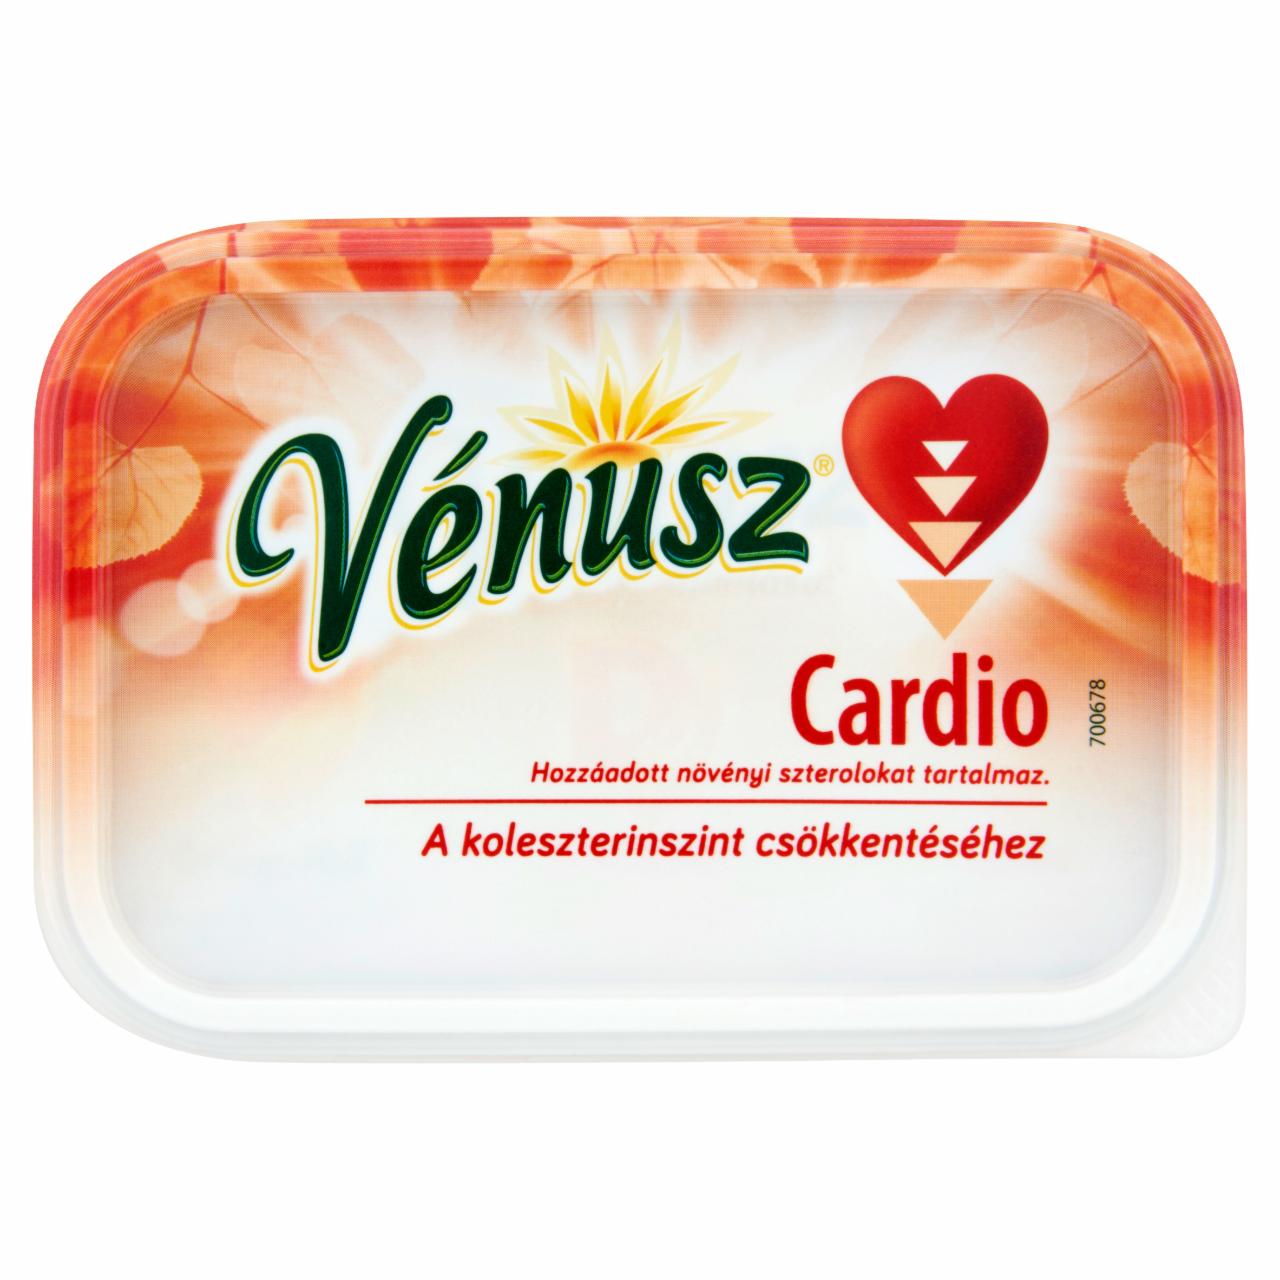 Képek - Vénusz Cardio csökkentett zsírtartalmú margarin hozzáadott növényi szterollal 200 g